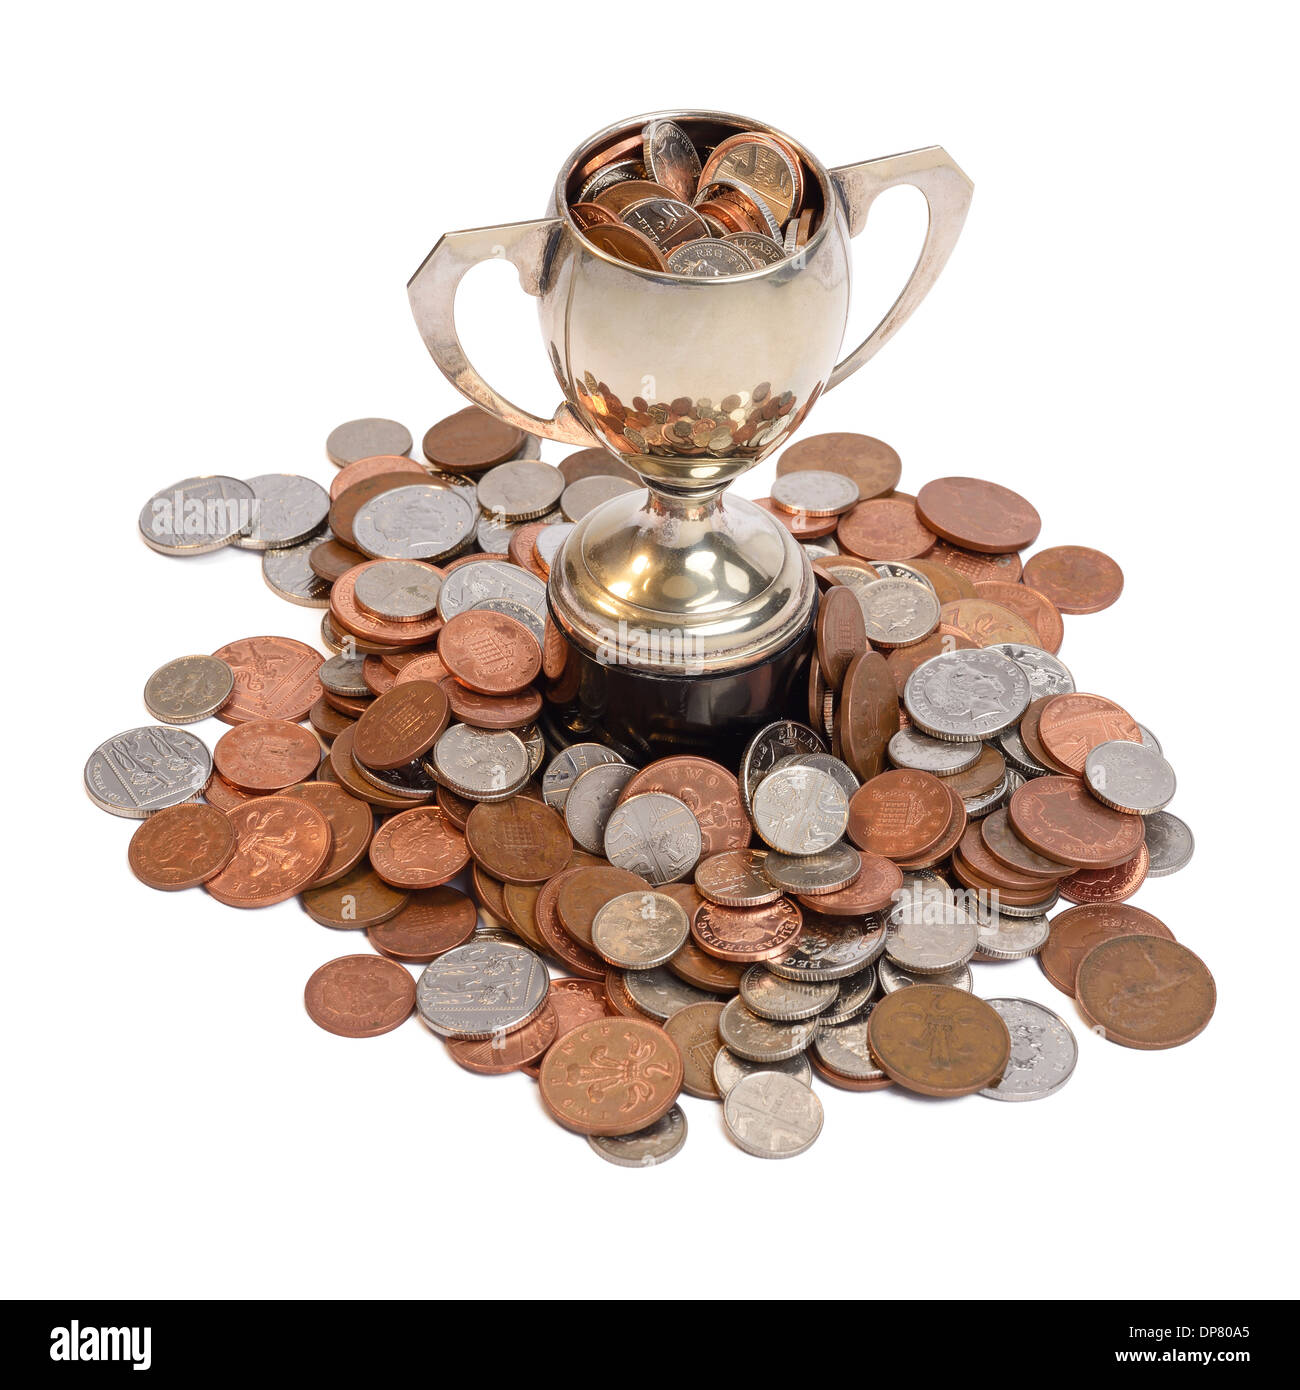 Trophée d'argent au milieu d'un tas de pièces de monnaie Banque D'Images